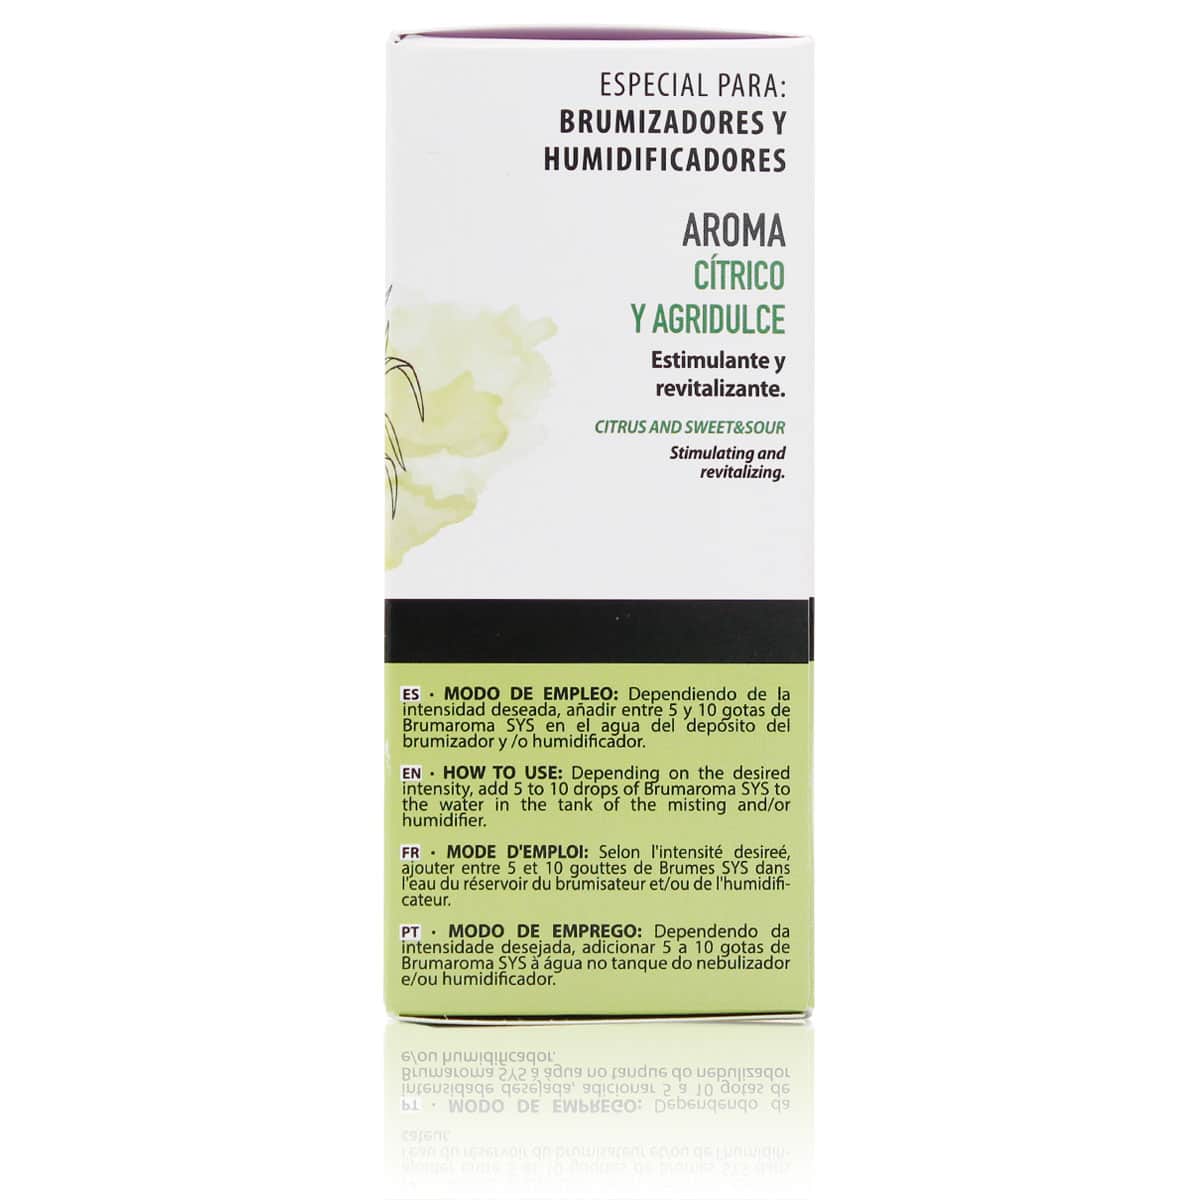 Comprar Esencia Lemon Grass Propiedades 50ml Brumaroma SYS Aromas